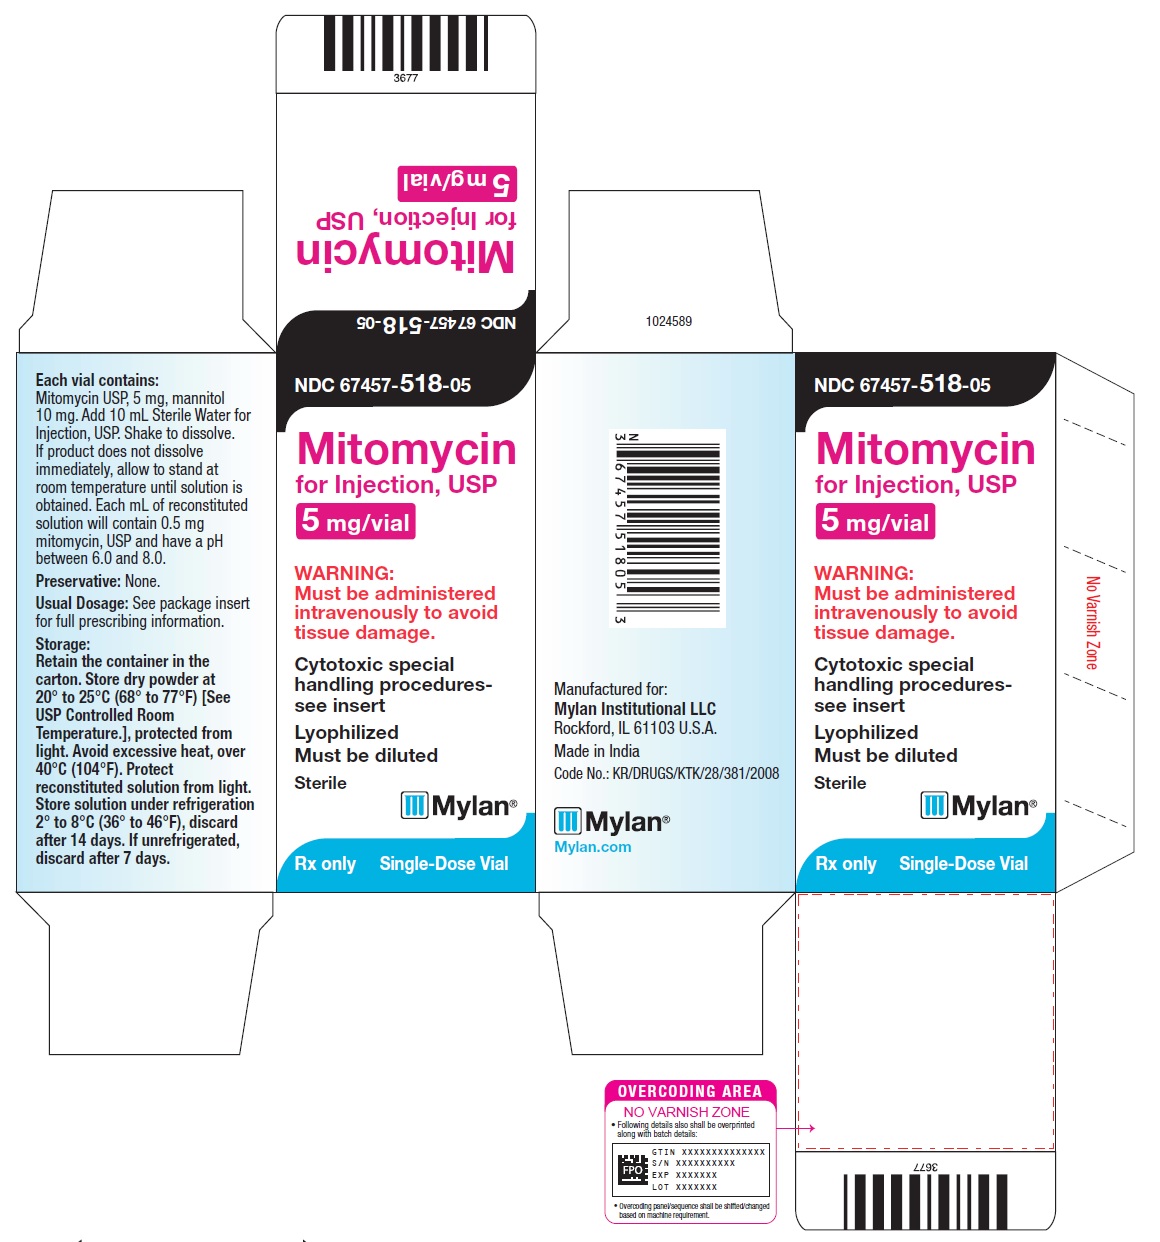 Carton 5 mg/vial